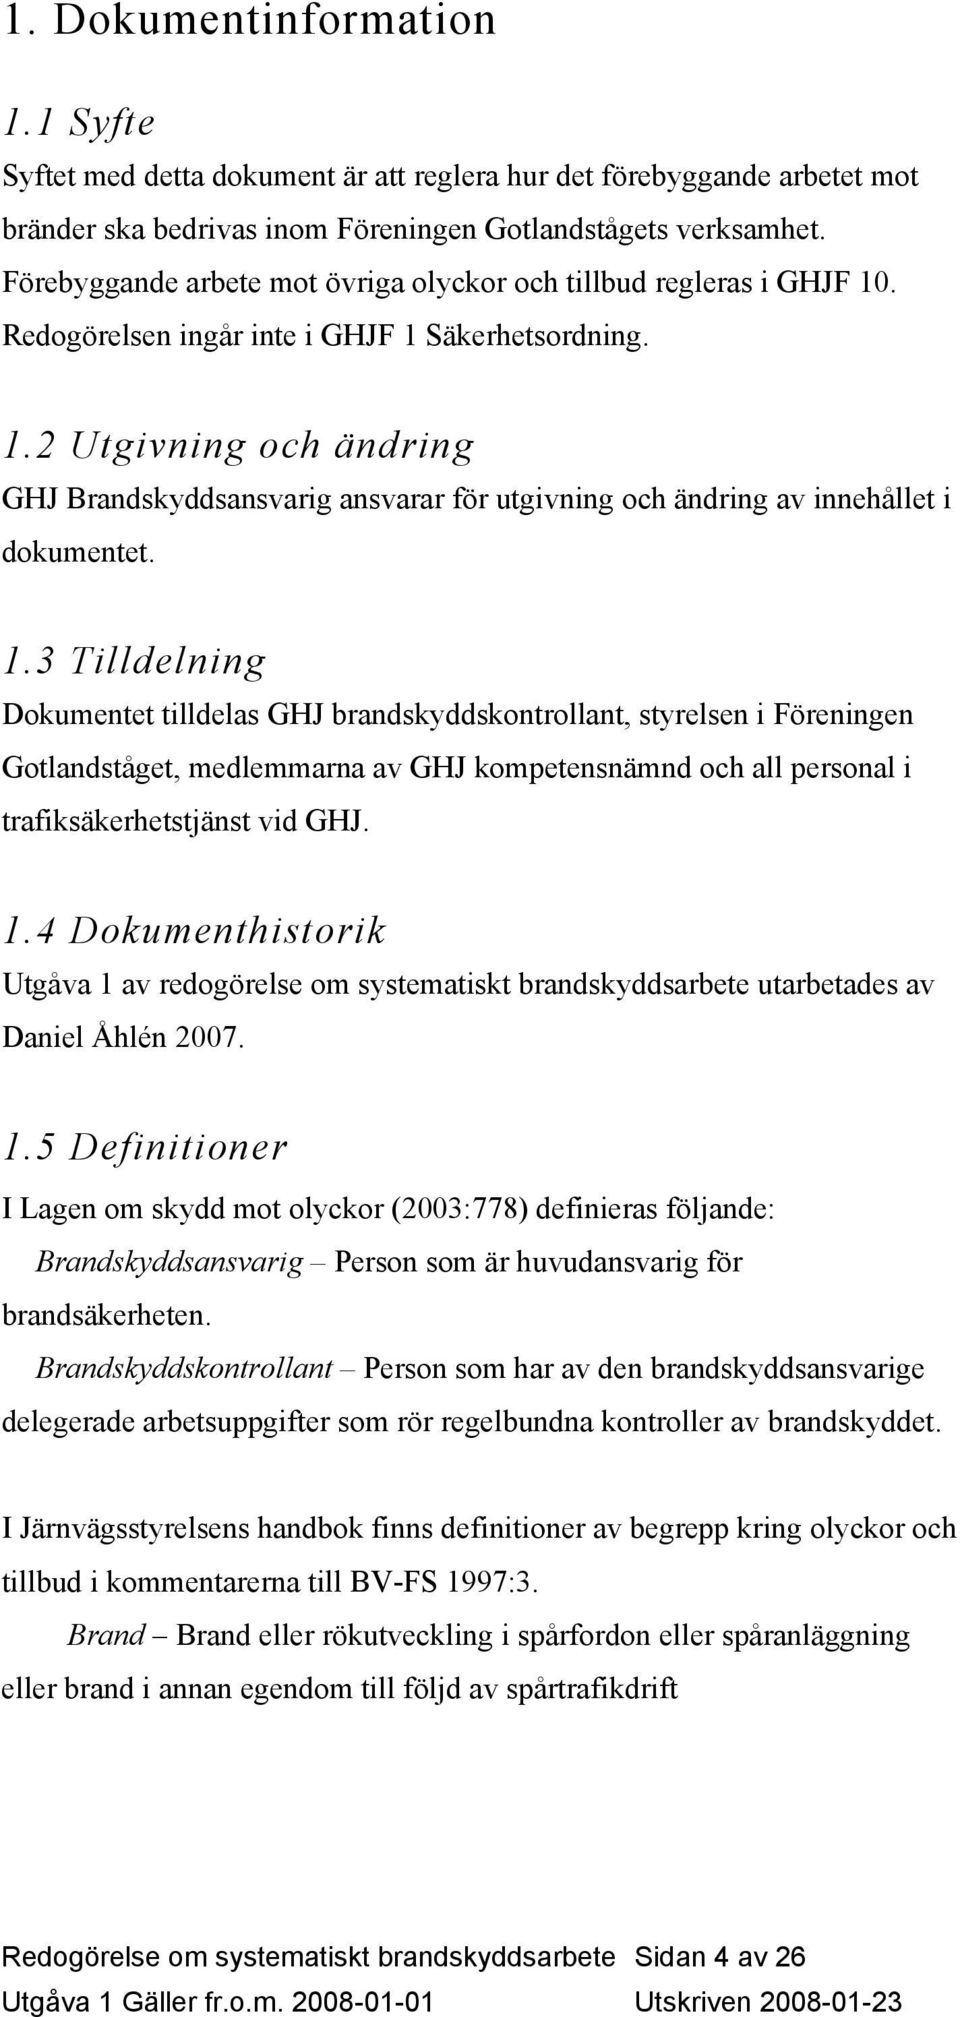 1.3 Tilldelning Dokumentet tilldelas GHJ brandskyddskontrollant, styrelsen i Föreningen Gotlandståget, medlemmarna av GHJ kompetensnämnd och all personal i trafiksäkerhetstjänst vid GHJ. 1.